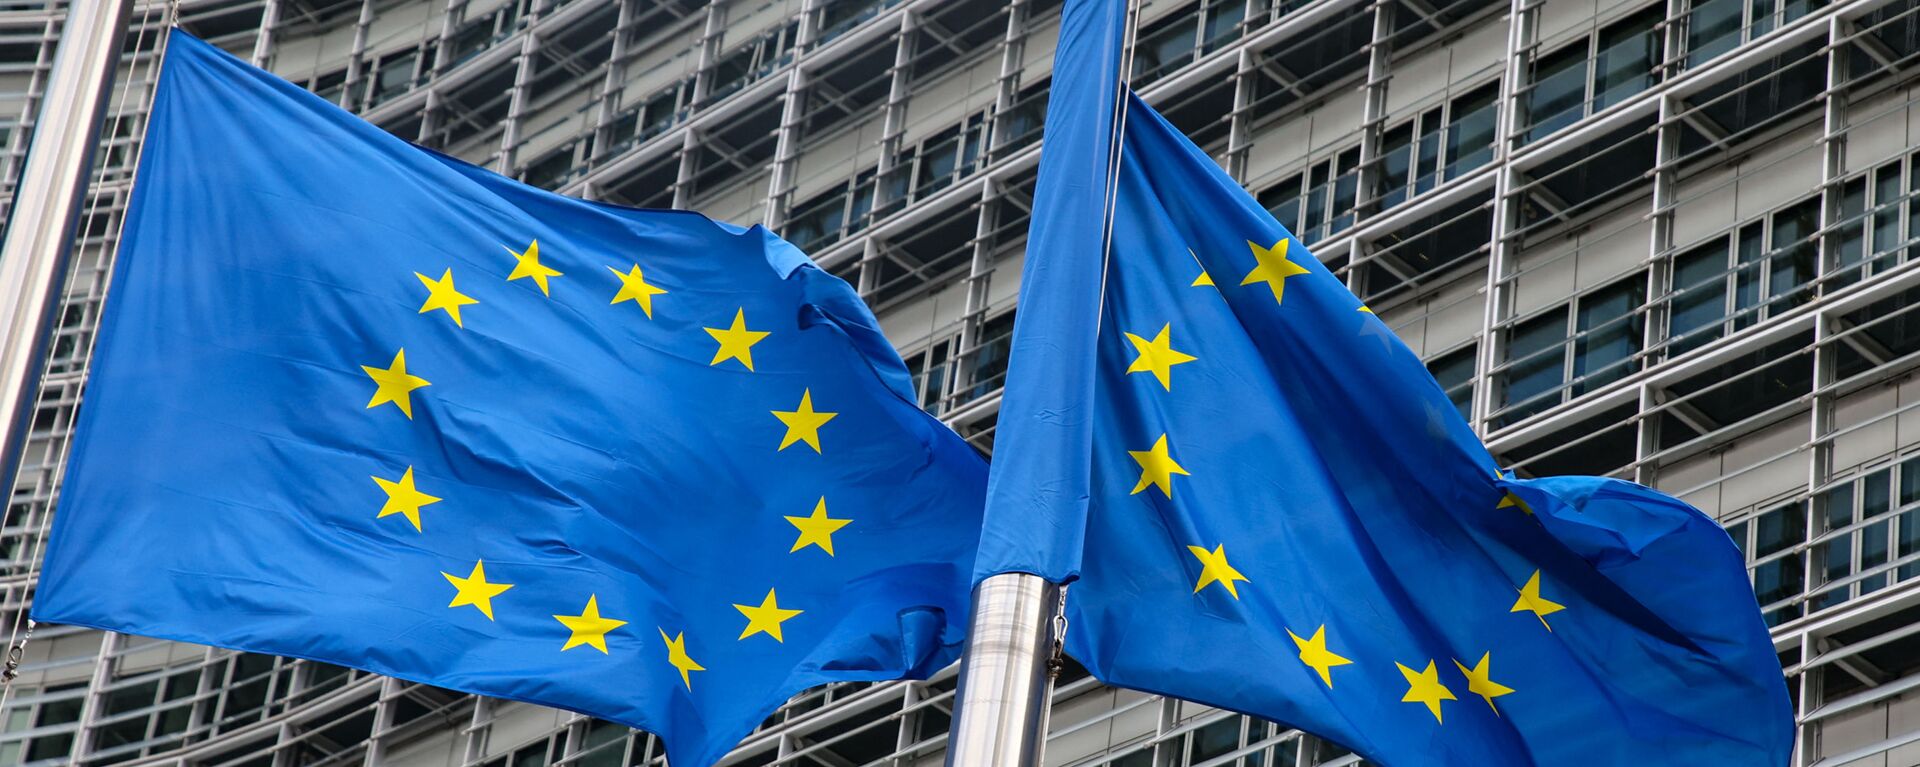 Флаги Европейского союза у штаб-квартиры Европейской комиссии в Брюсселе  - Sputnik Lietuva, 1920, 20.04.2021